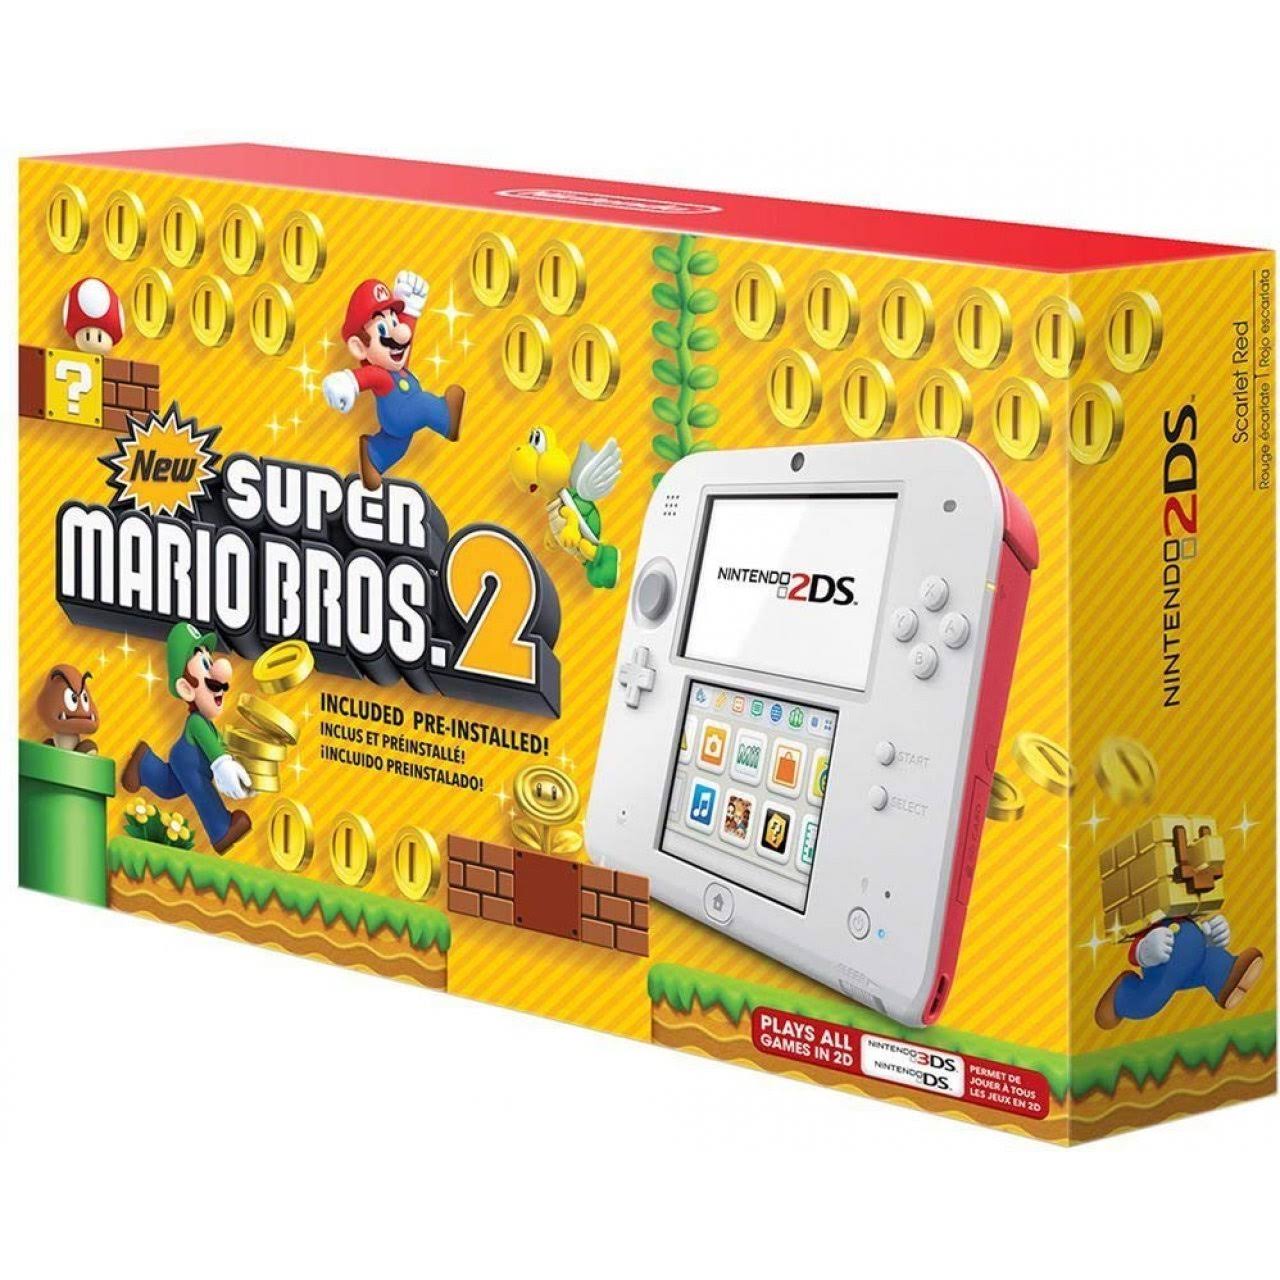 Super Mario Bros 2 Edition Nintendo 2DS